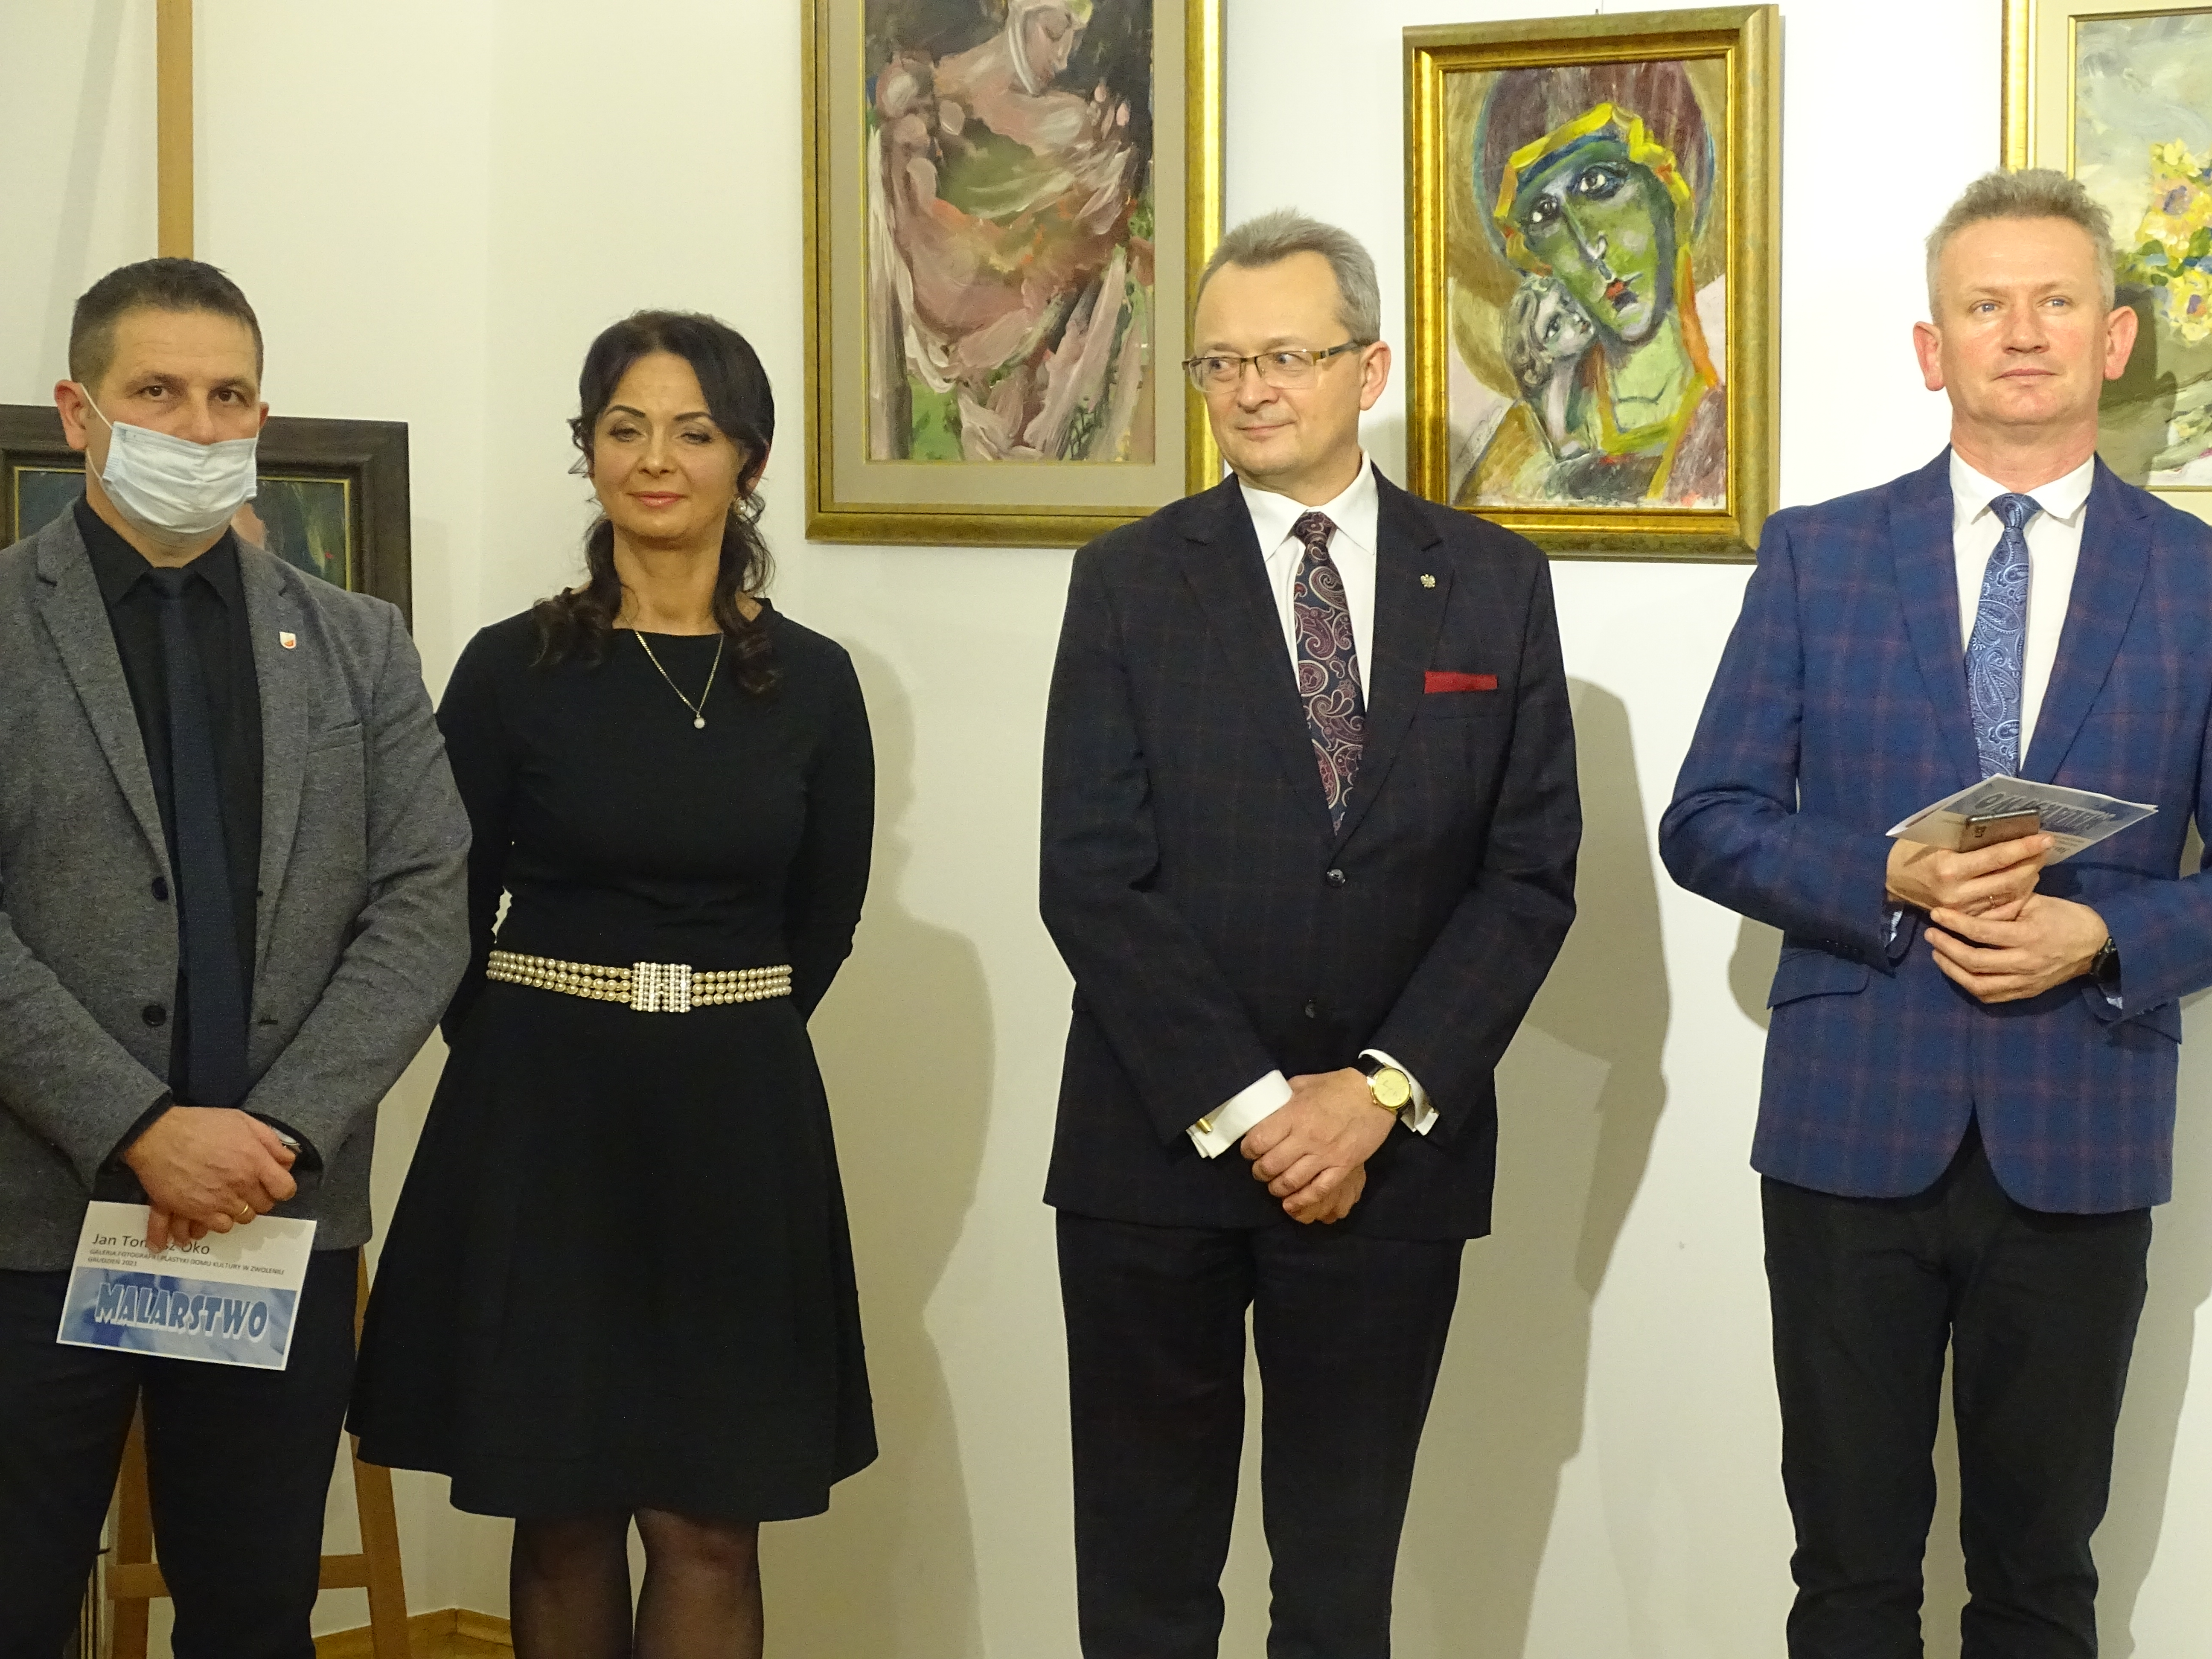 Wystawę tradycyjnie otworzył burmistrz Zwolenia Arkadiusz Sulima. 